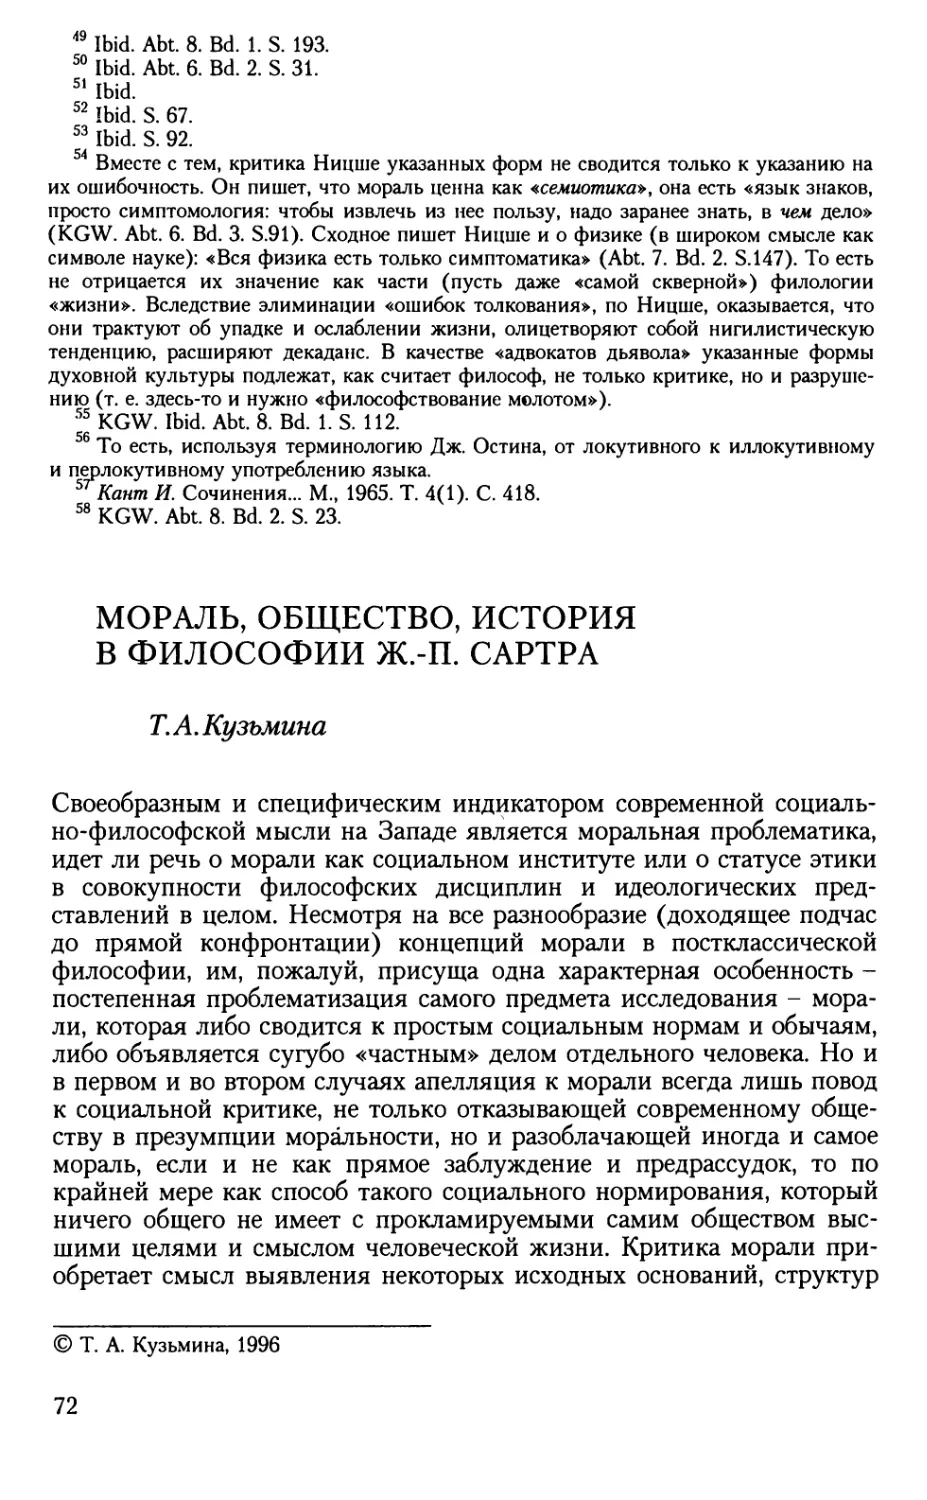 Кузьмина Т.А. Мораль, общество, история в философии Ж.-П. Сартра